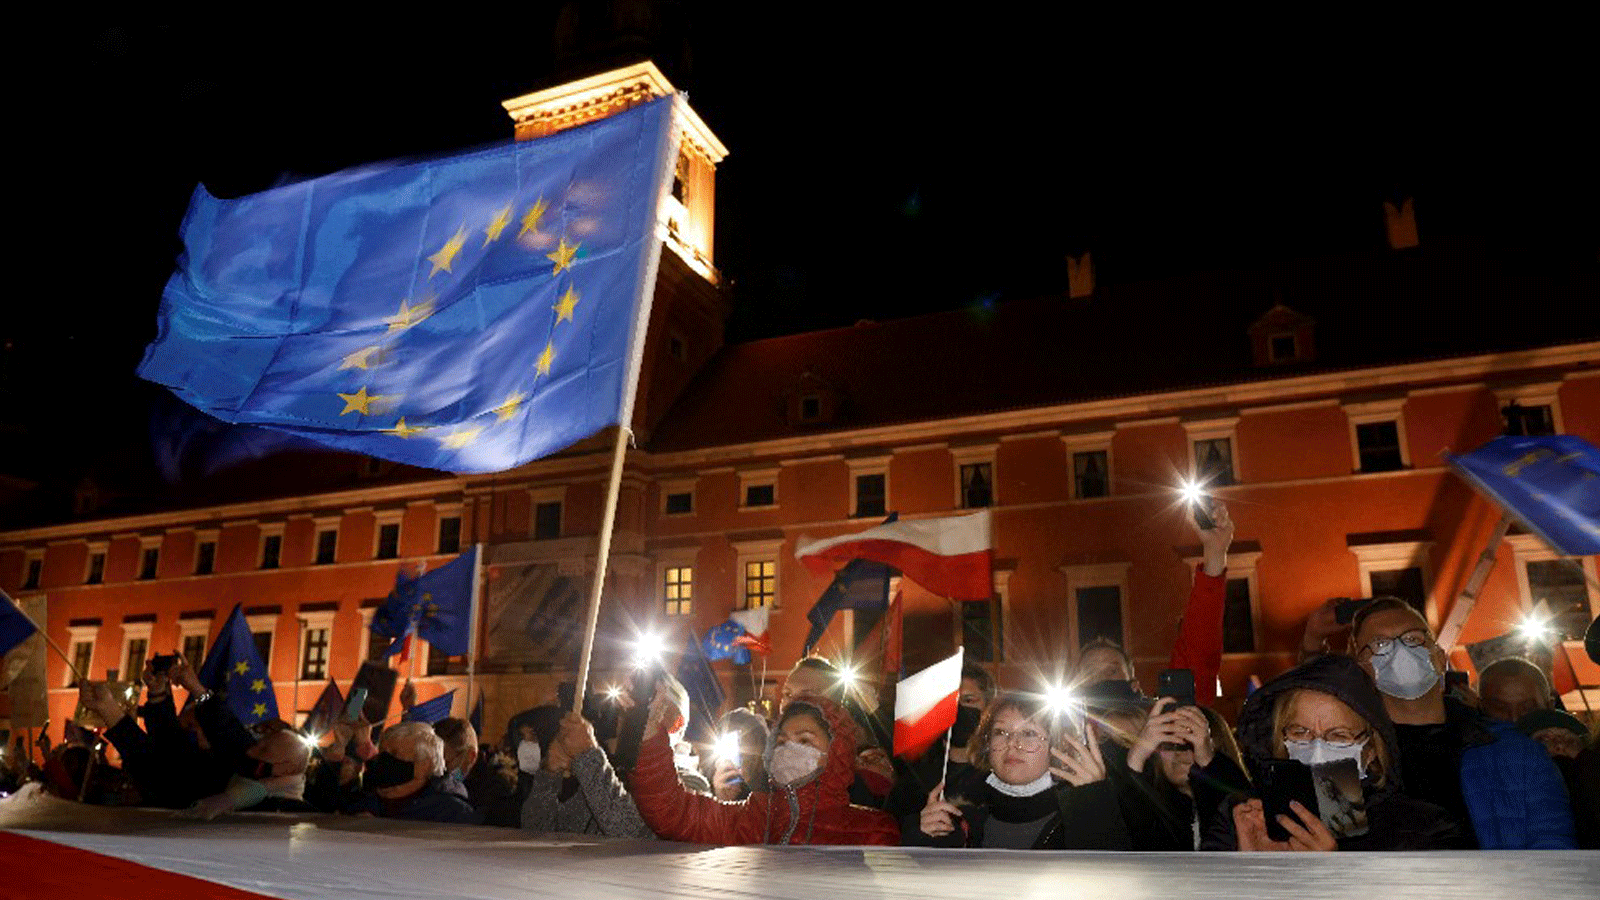  المحكمة العليا في الاتحاد الأوروبي تأمر بولندا بدفع مليون يورو يومياً لعدم تعليق 